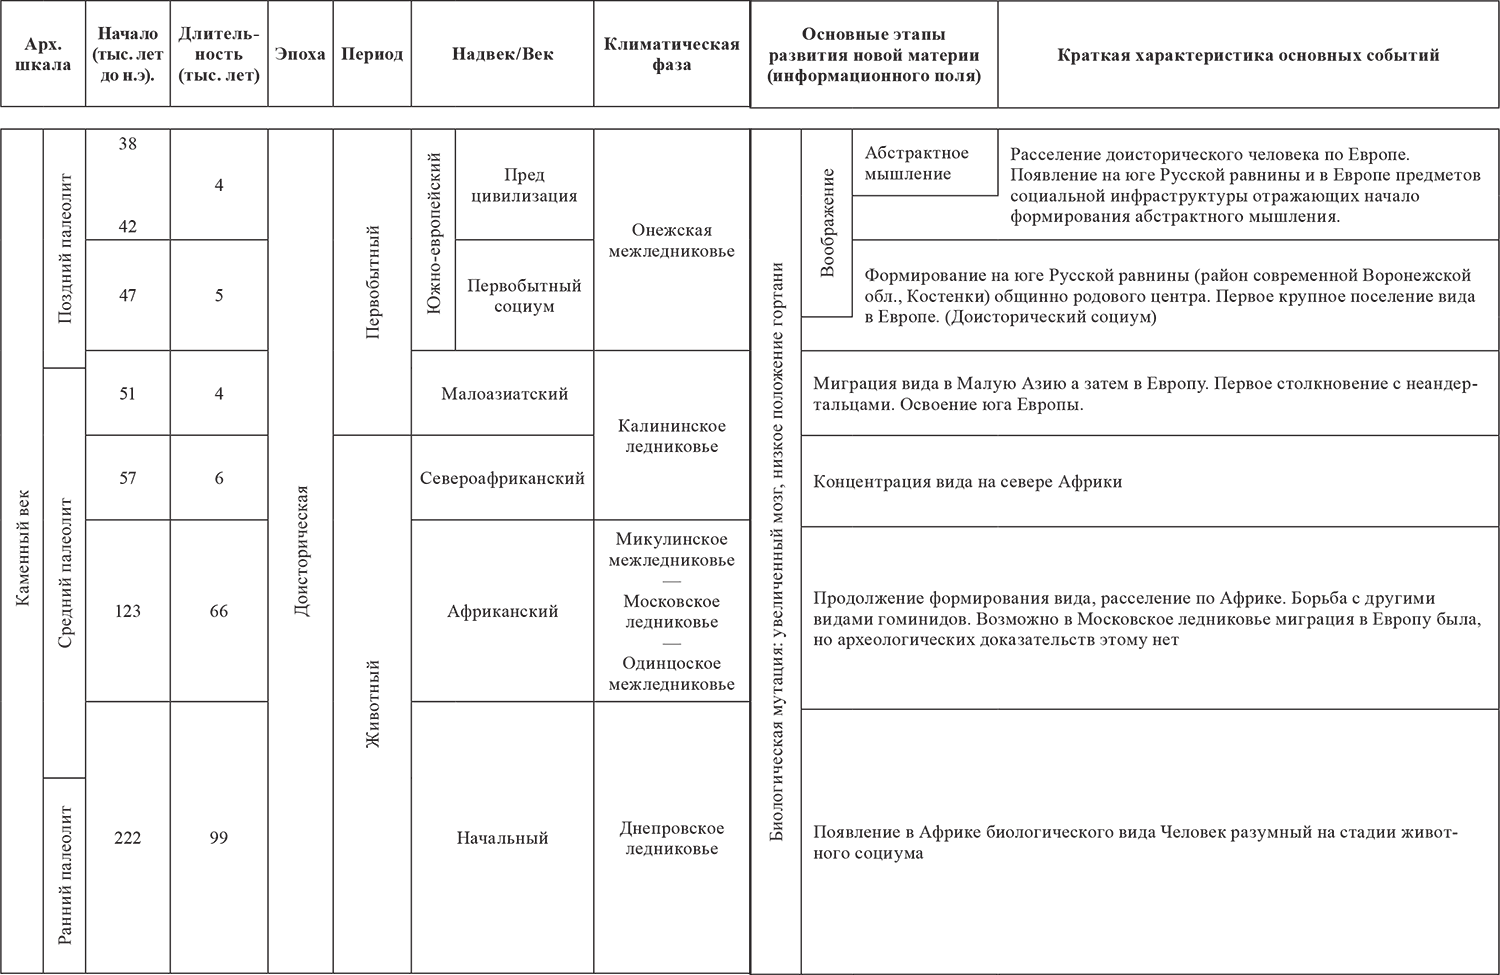 Малый и большой период в таблице. Микулинское межледниковье. Палеолит хронологические рамки таблица. Исторические периоды в хронологическом порядке палеолит.